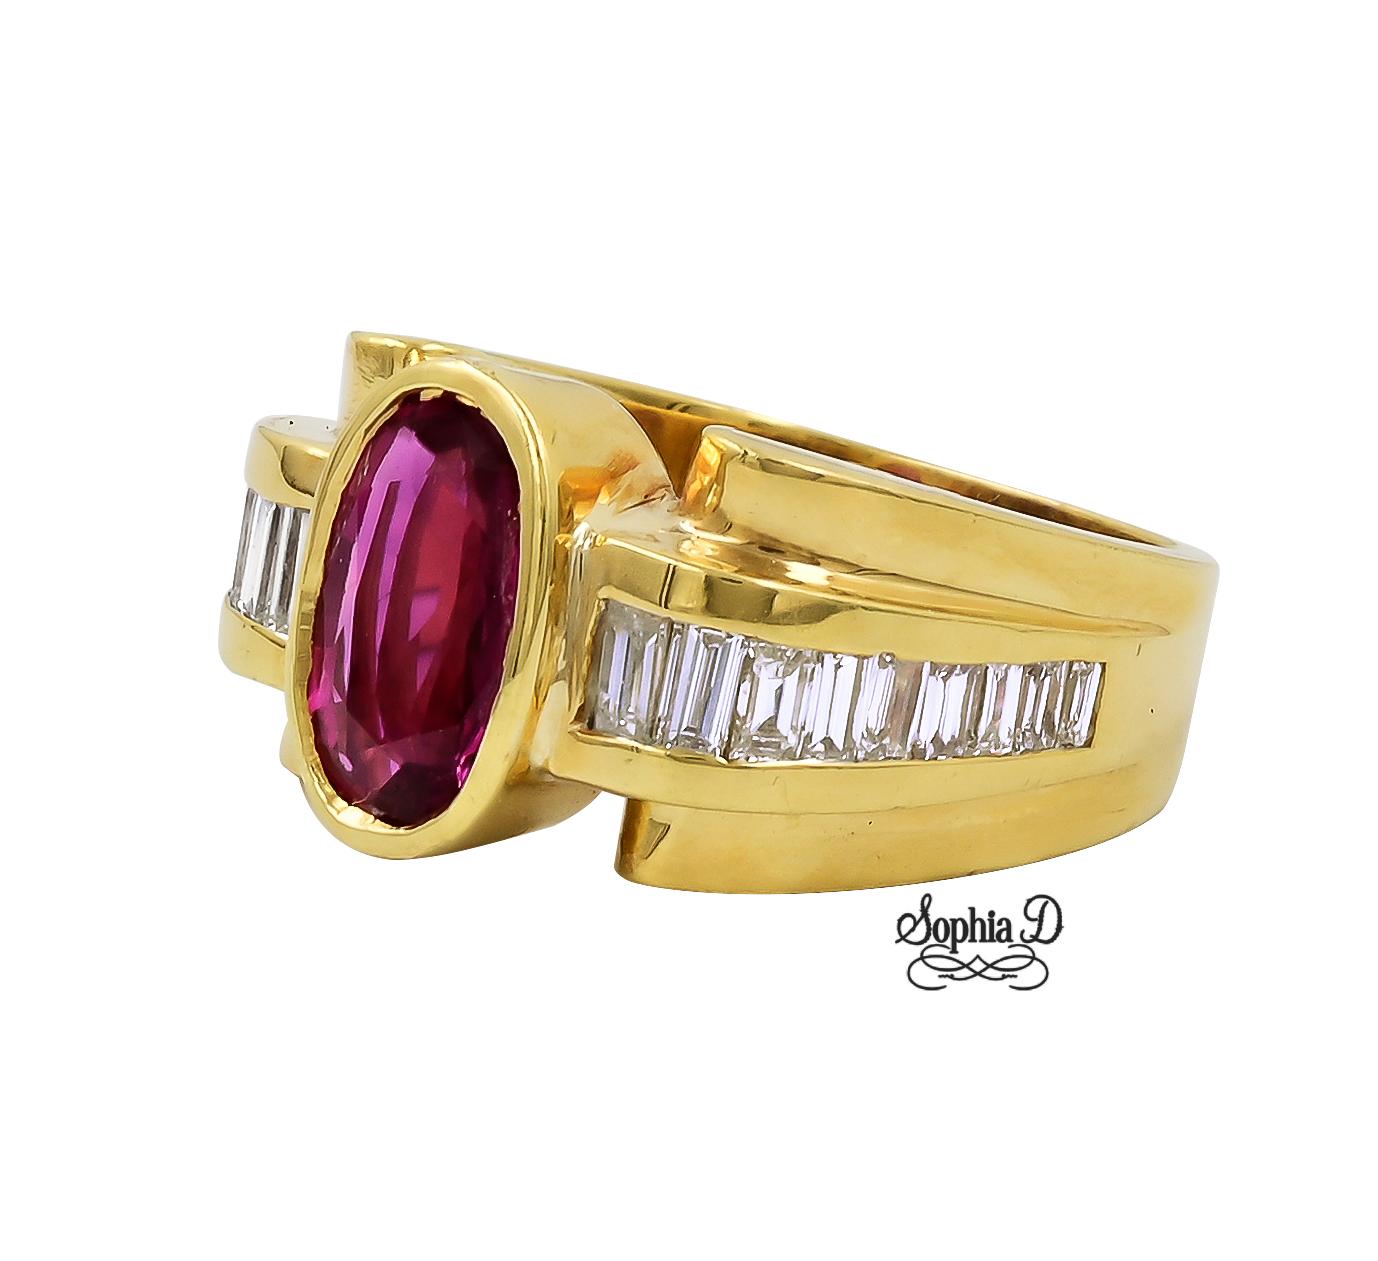 Ring aus 18 Karat Gelbgold mit Diamant und Rubin.

Sophia D von Joseph Dardashti LTD ist seit 35 Jahren weltweit bekannt und lässt sich vom klassischen Art-Déco-Design inspirieren, das mit modernen Fertigungstechniken verschmilzt.  